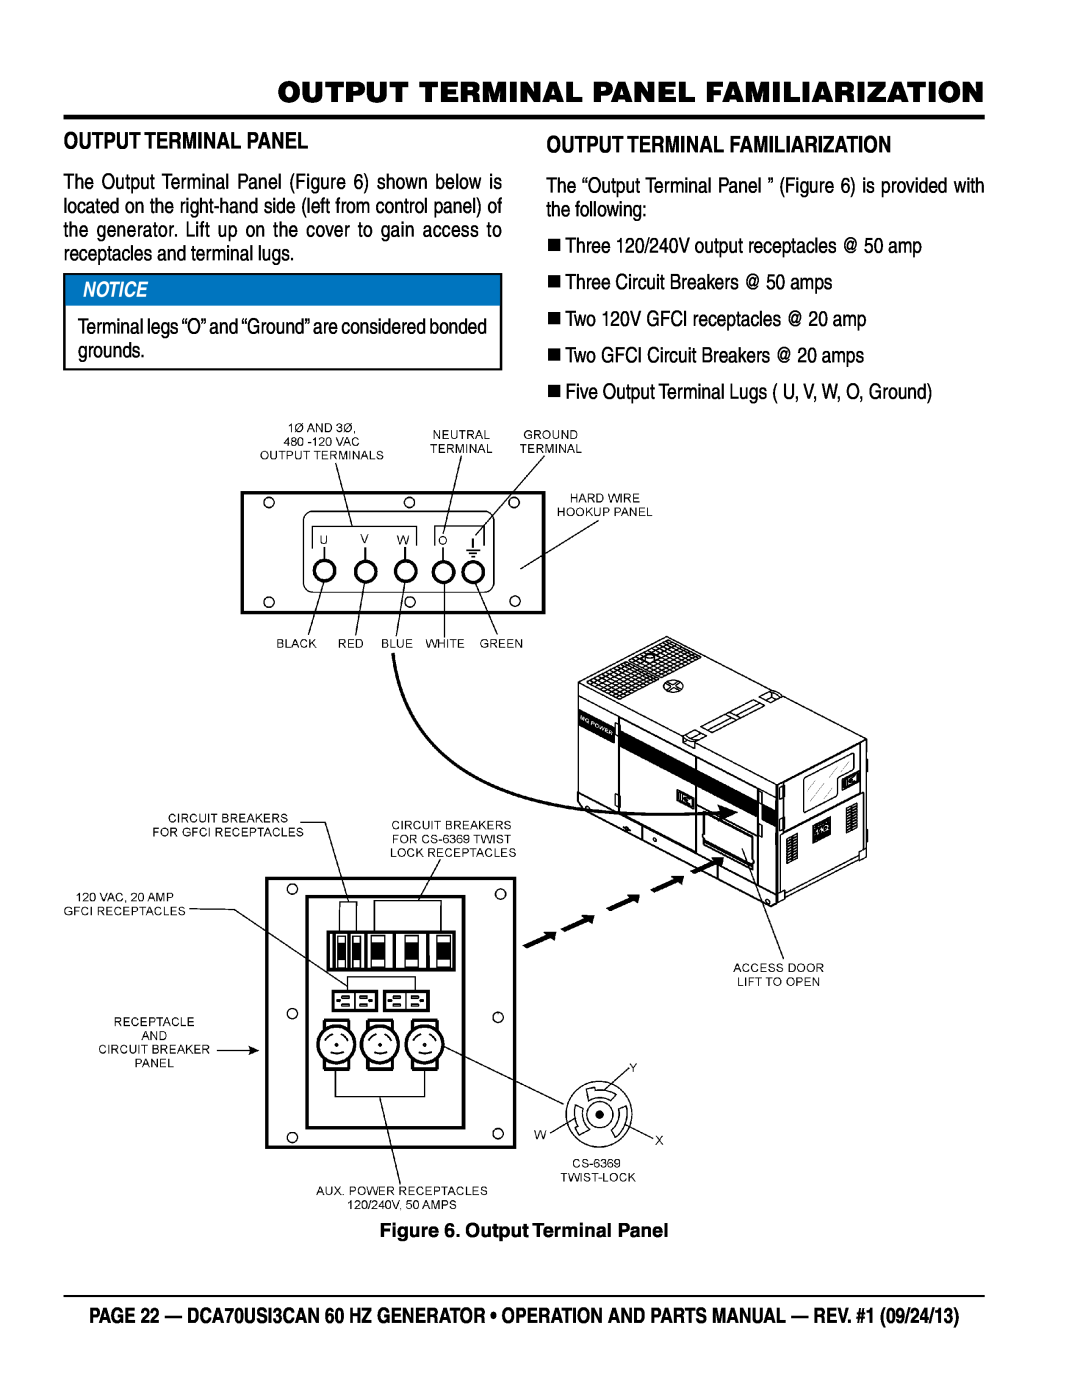 Multiquip DCA70US13CAN manual Output Terminal Panel Familiarization, Output Terminal Familiarization 